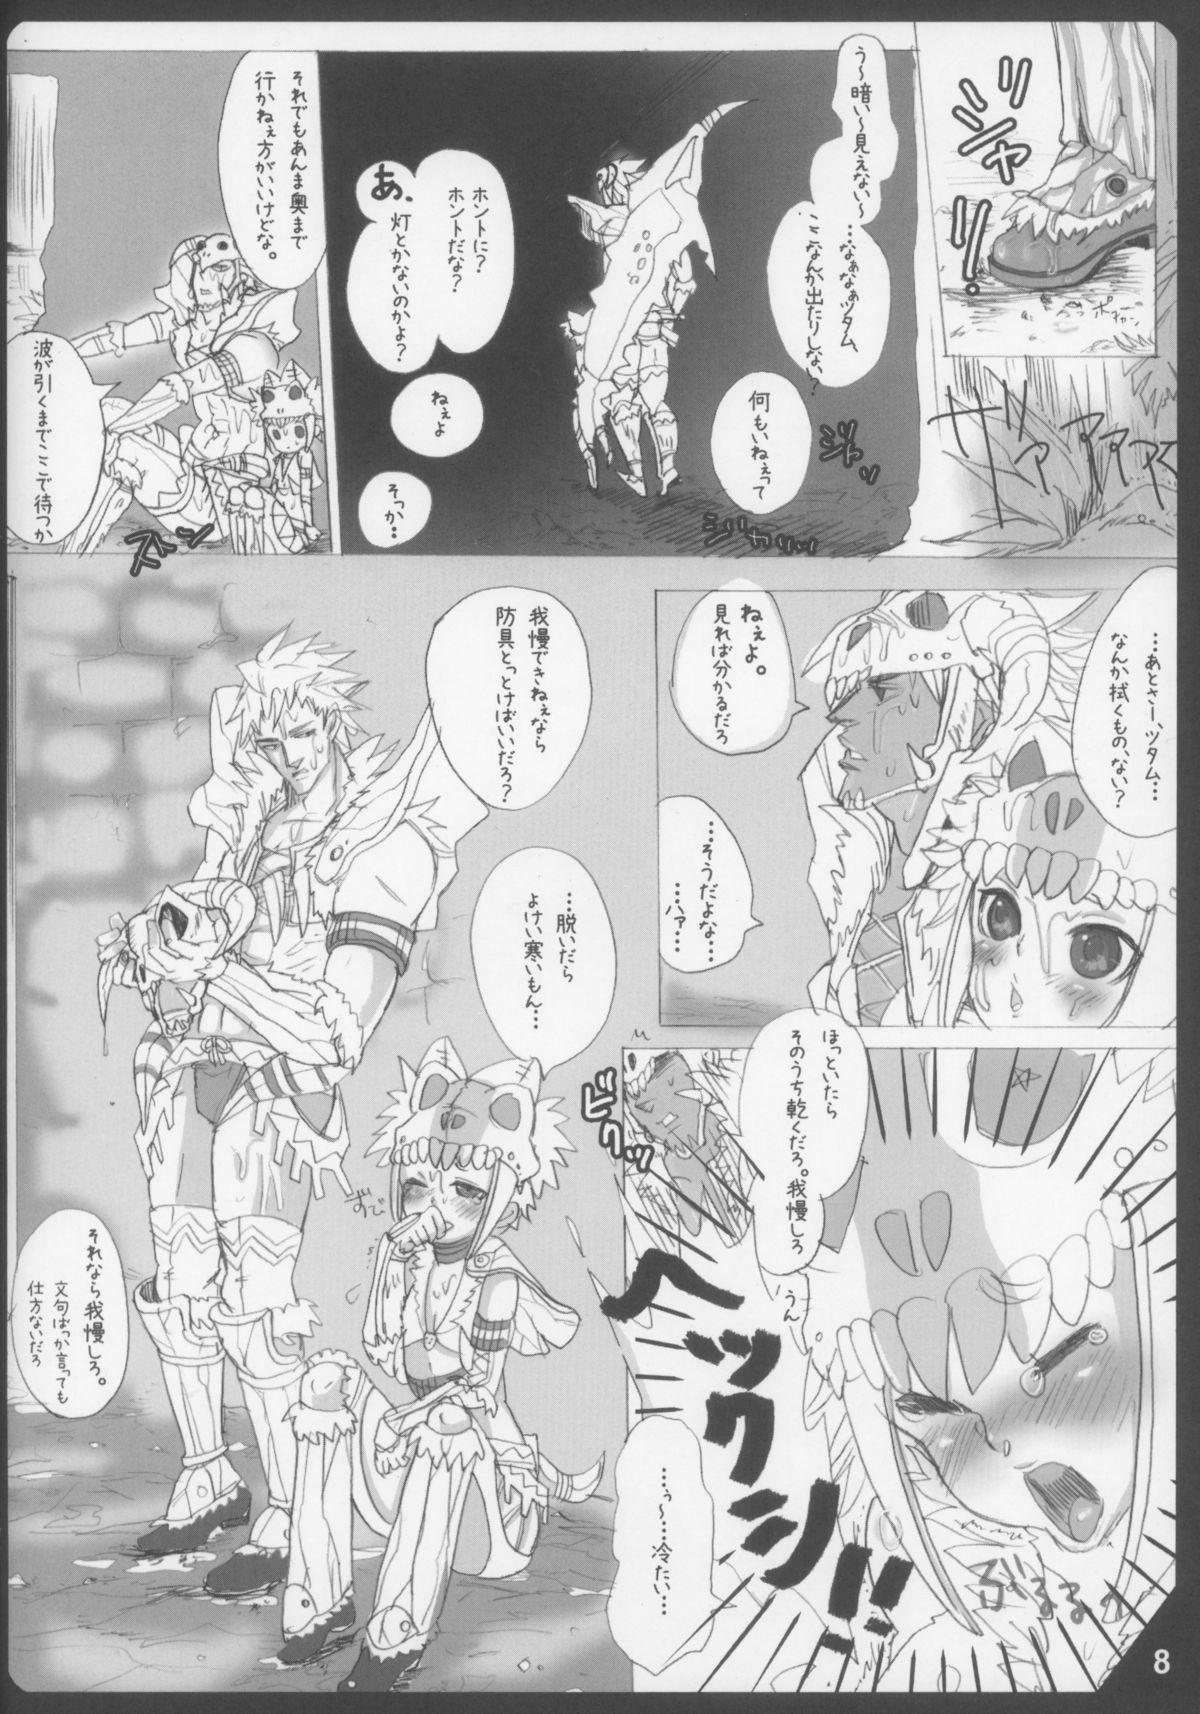 British Mitsurin no Arashi Daisakusen - Monster hunter Shesafreak - Page 8